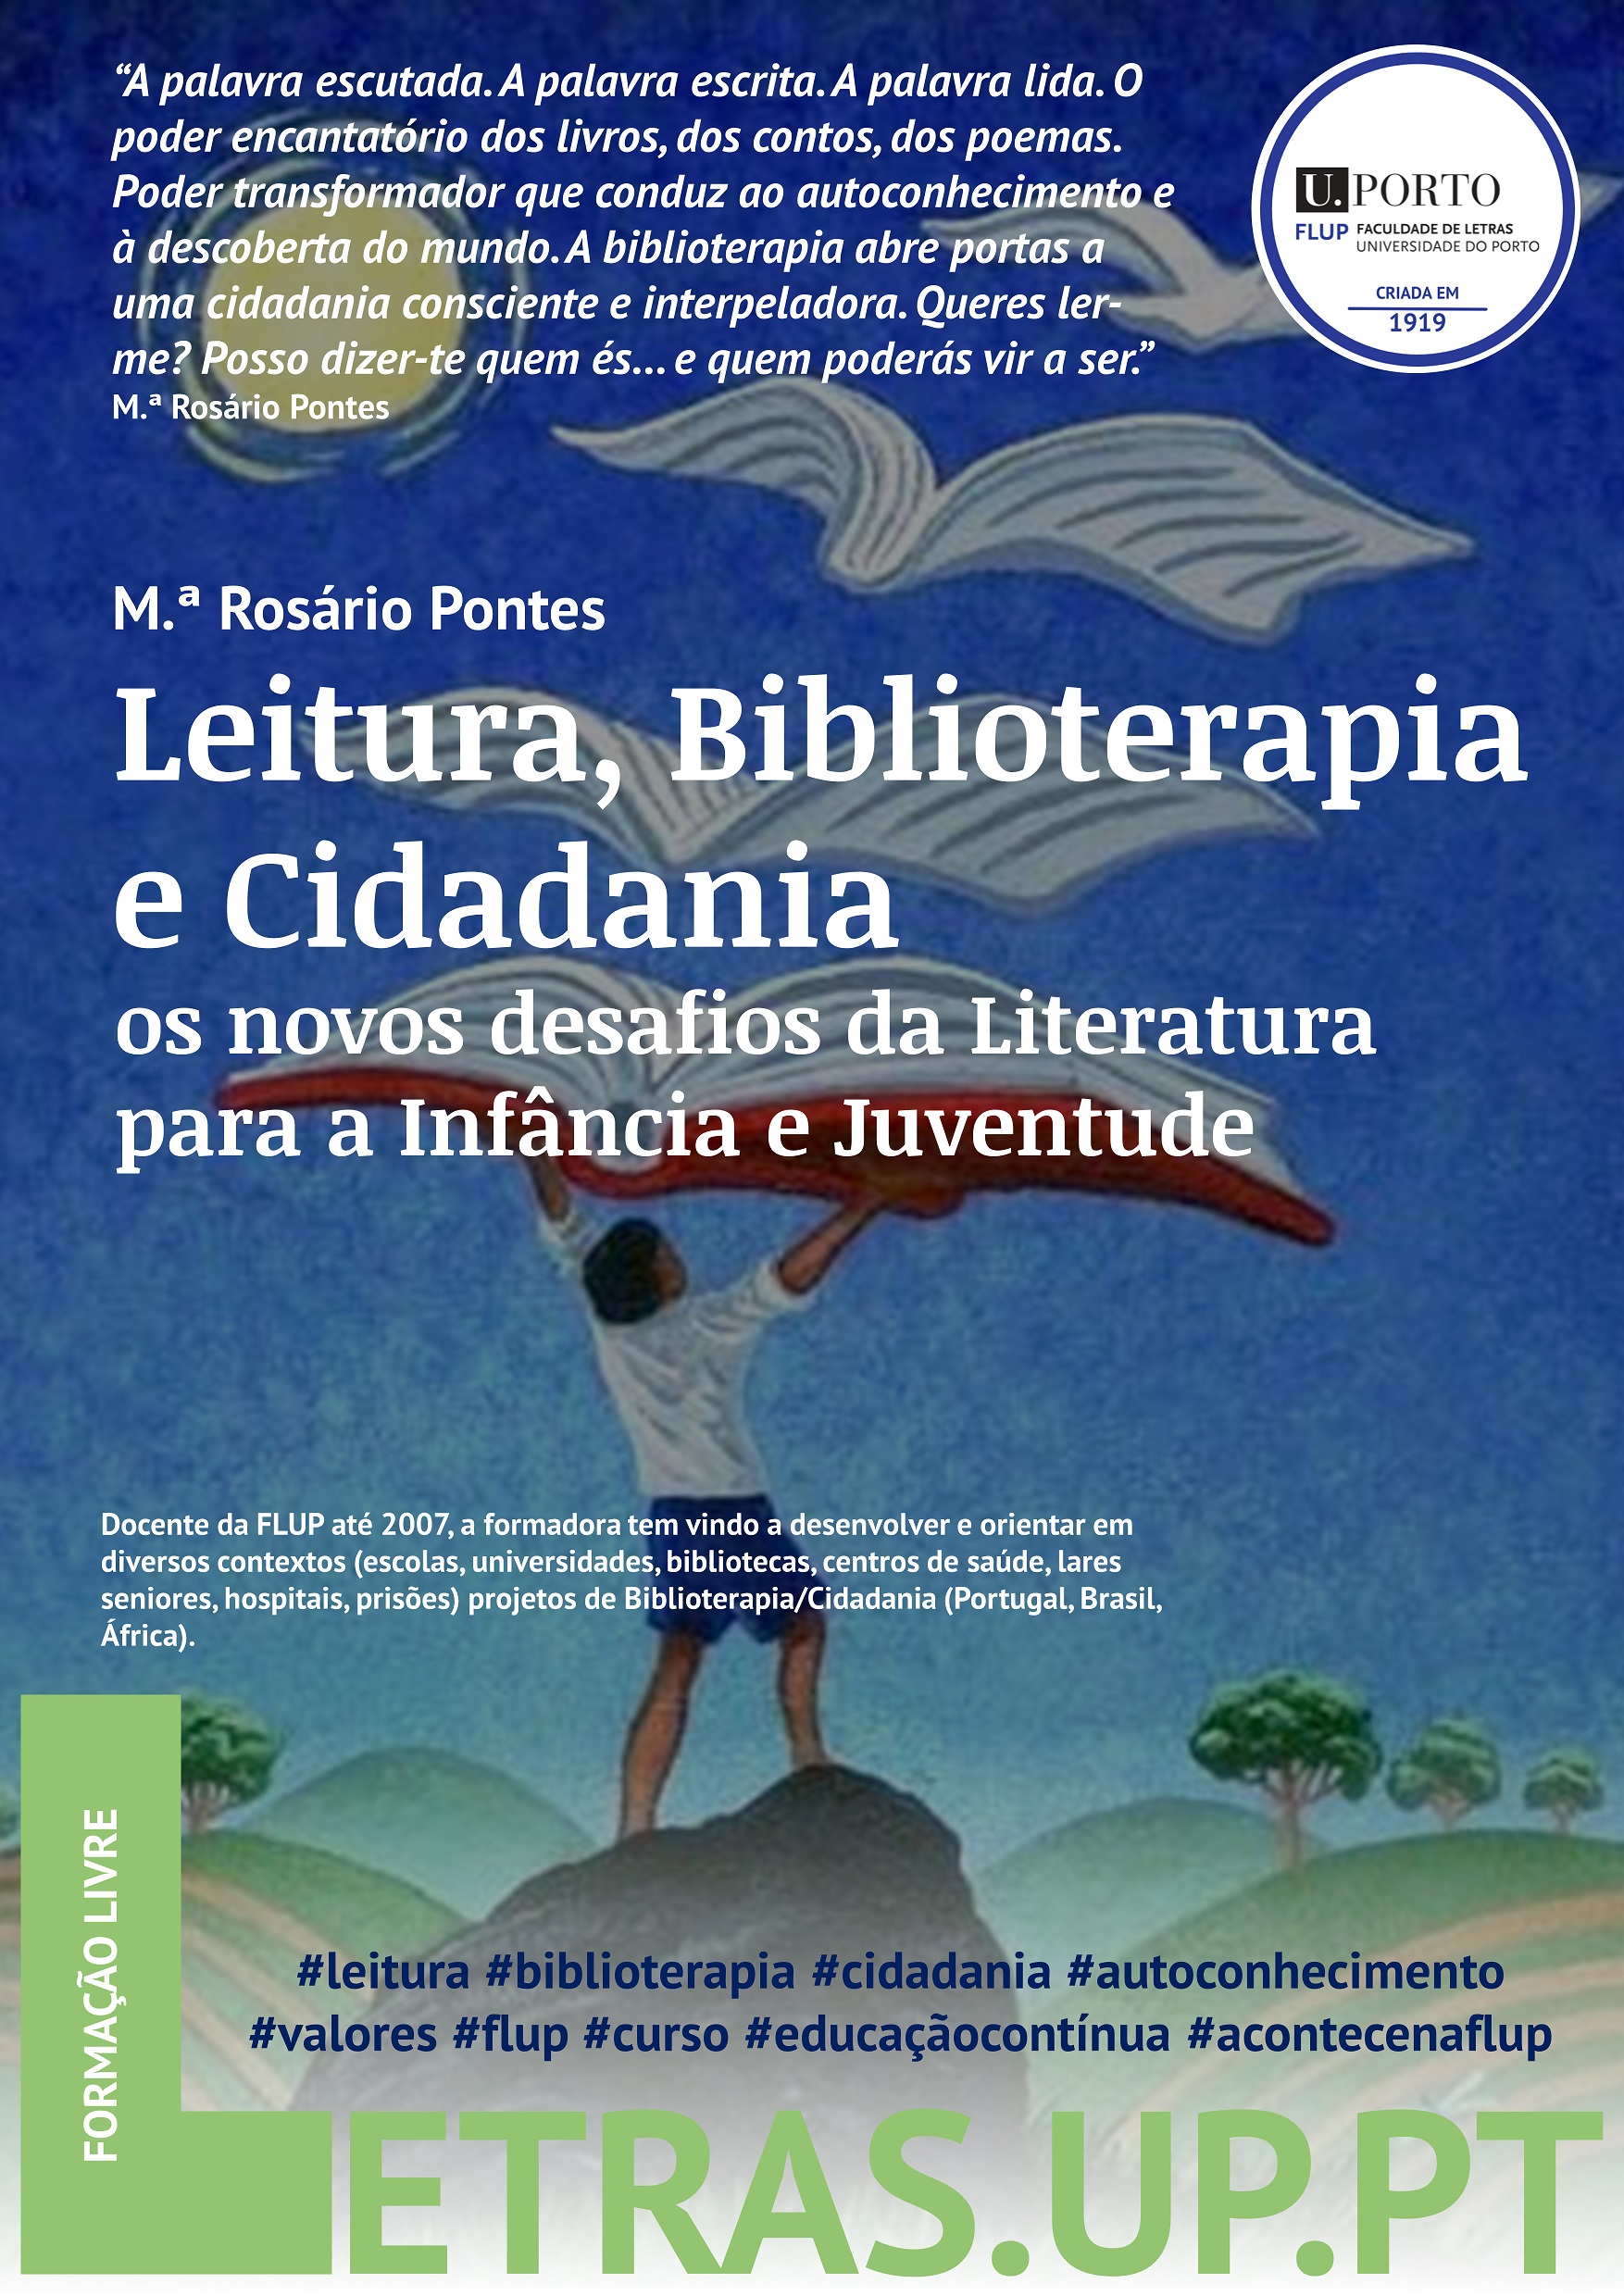 Leitura, Biblioterapia e Cidadania: os novos desafios da Literatura para a Infância e Juventude